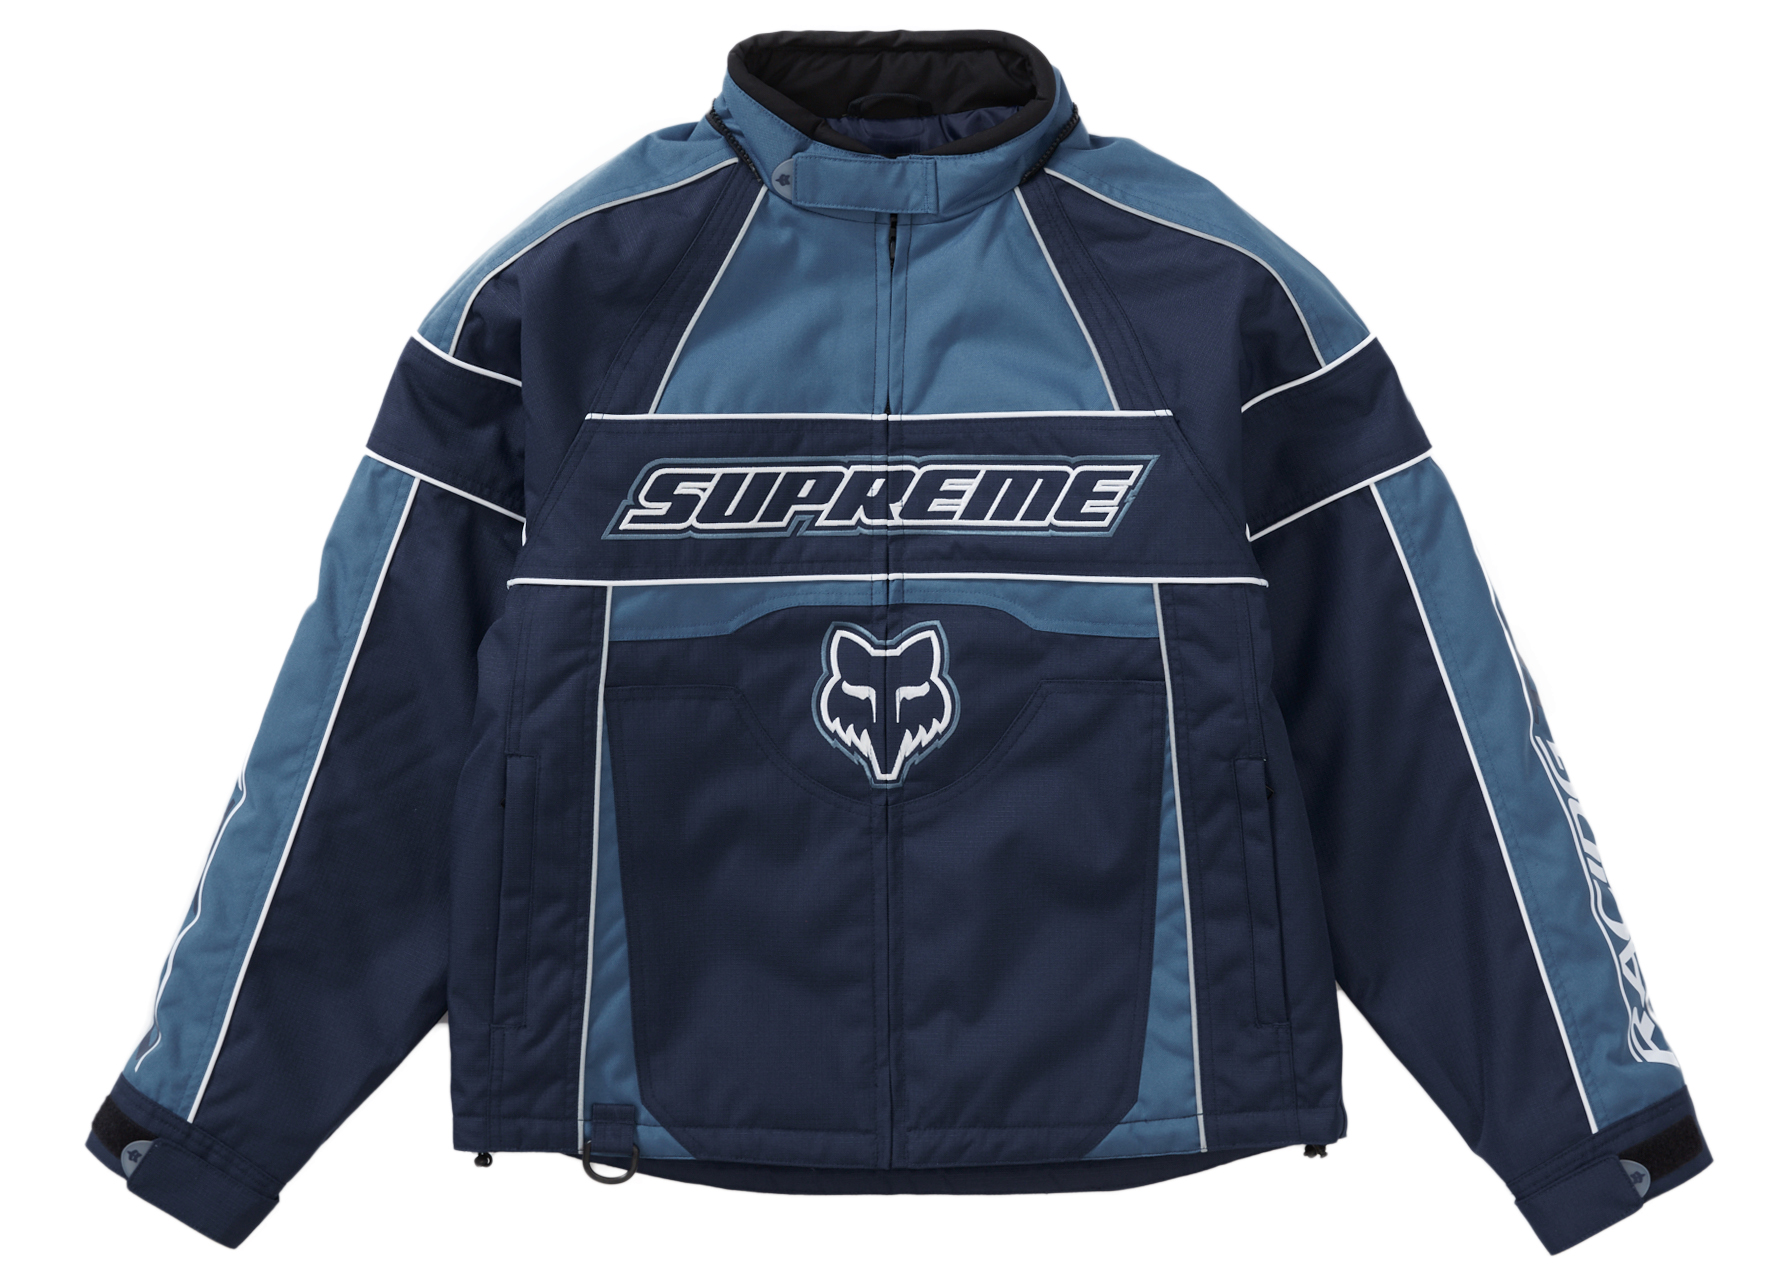 24,666円Supreme / Fox Racing Jacket